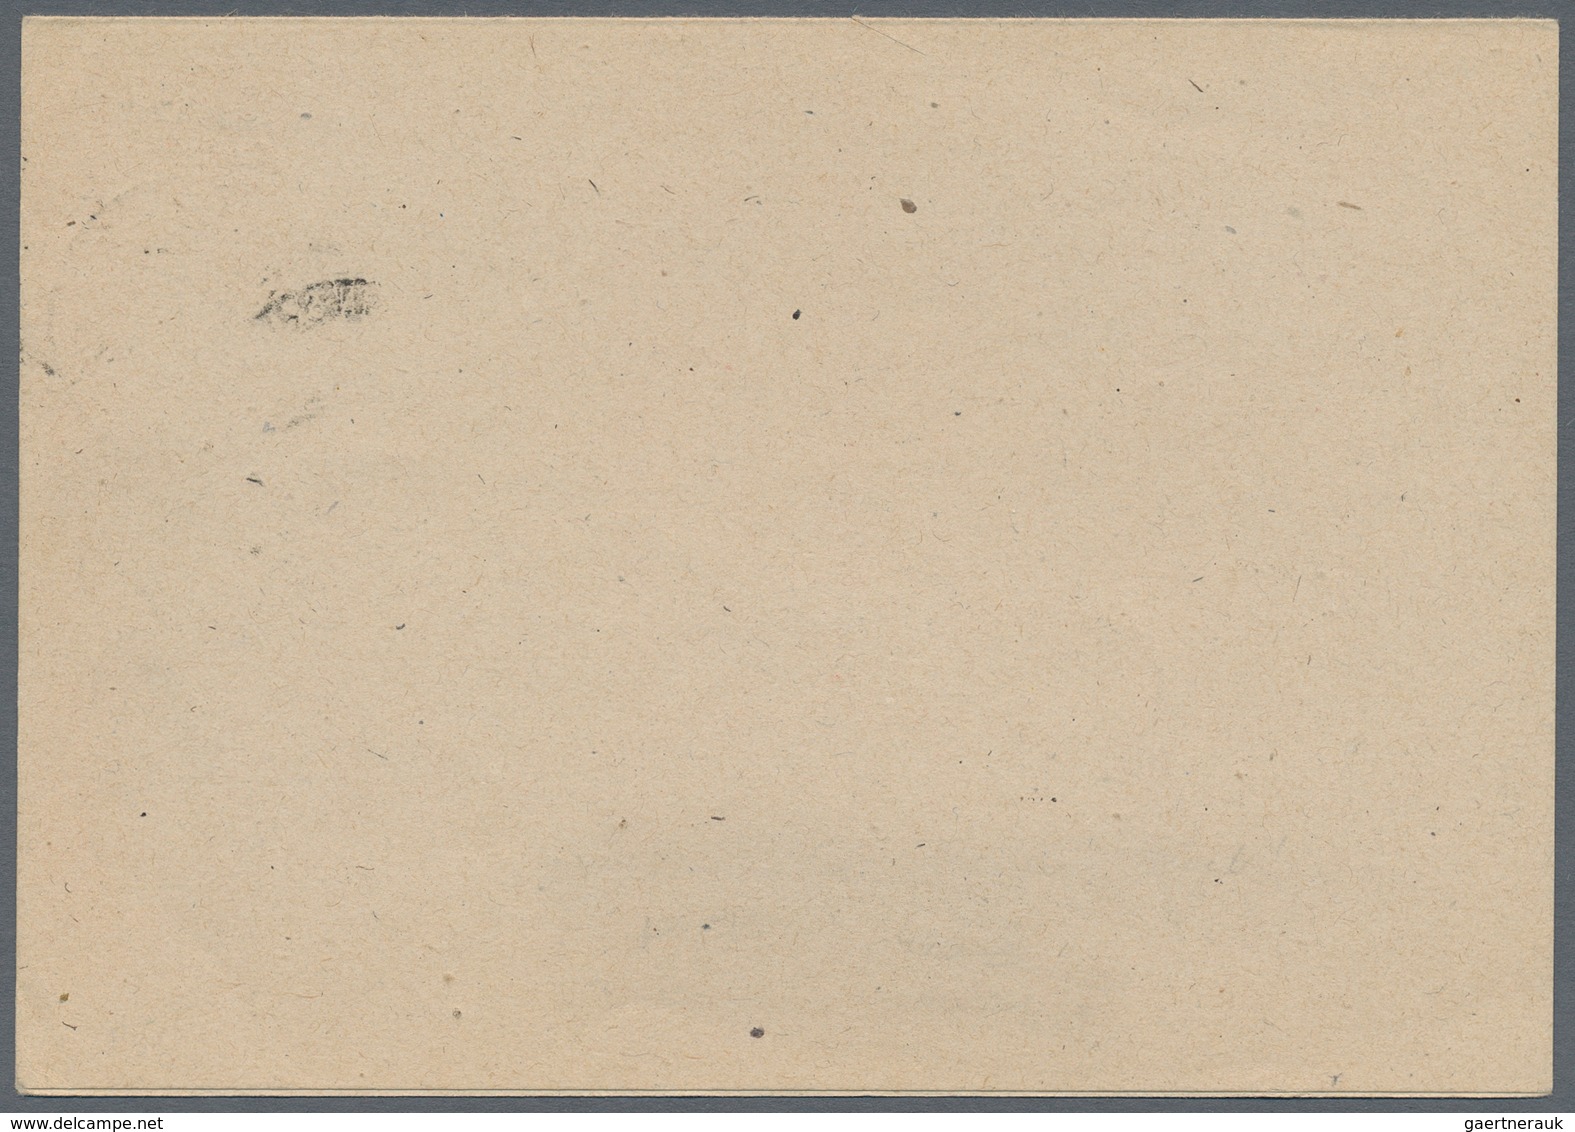 Berlin - Vorläufer: 1948, SBZ-Frage/Antwortkarte 30 Pfg. Maschinenaufdruck Zusammenhängend, Bedarfsg - Covers & Documents